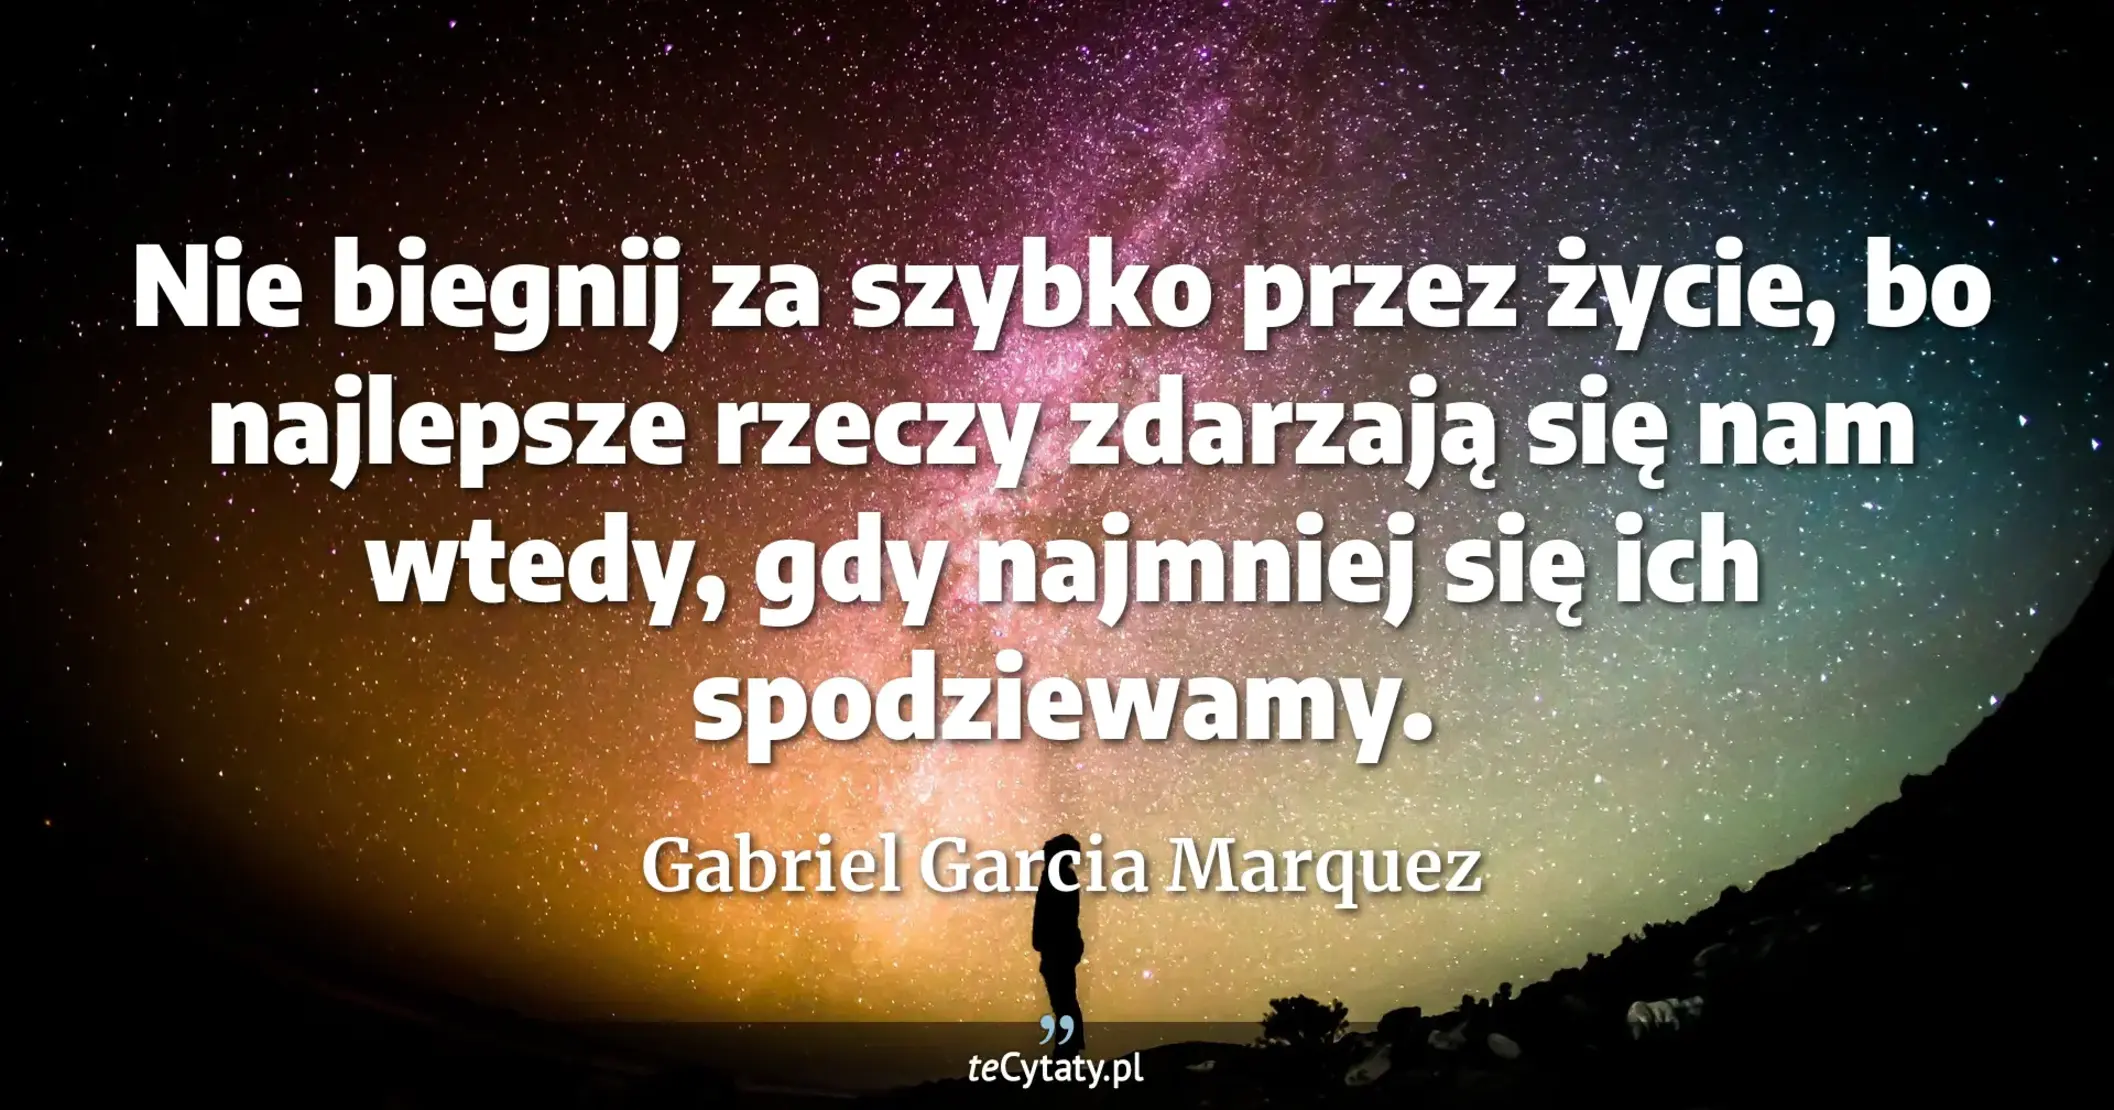 Nie biegnij za szybko przez życie, bo najlepsze rzeczy zdarzają się nam wtedy, gdy najmniej się ich spodziewamy. - Gabriel Garcia Marquez